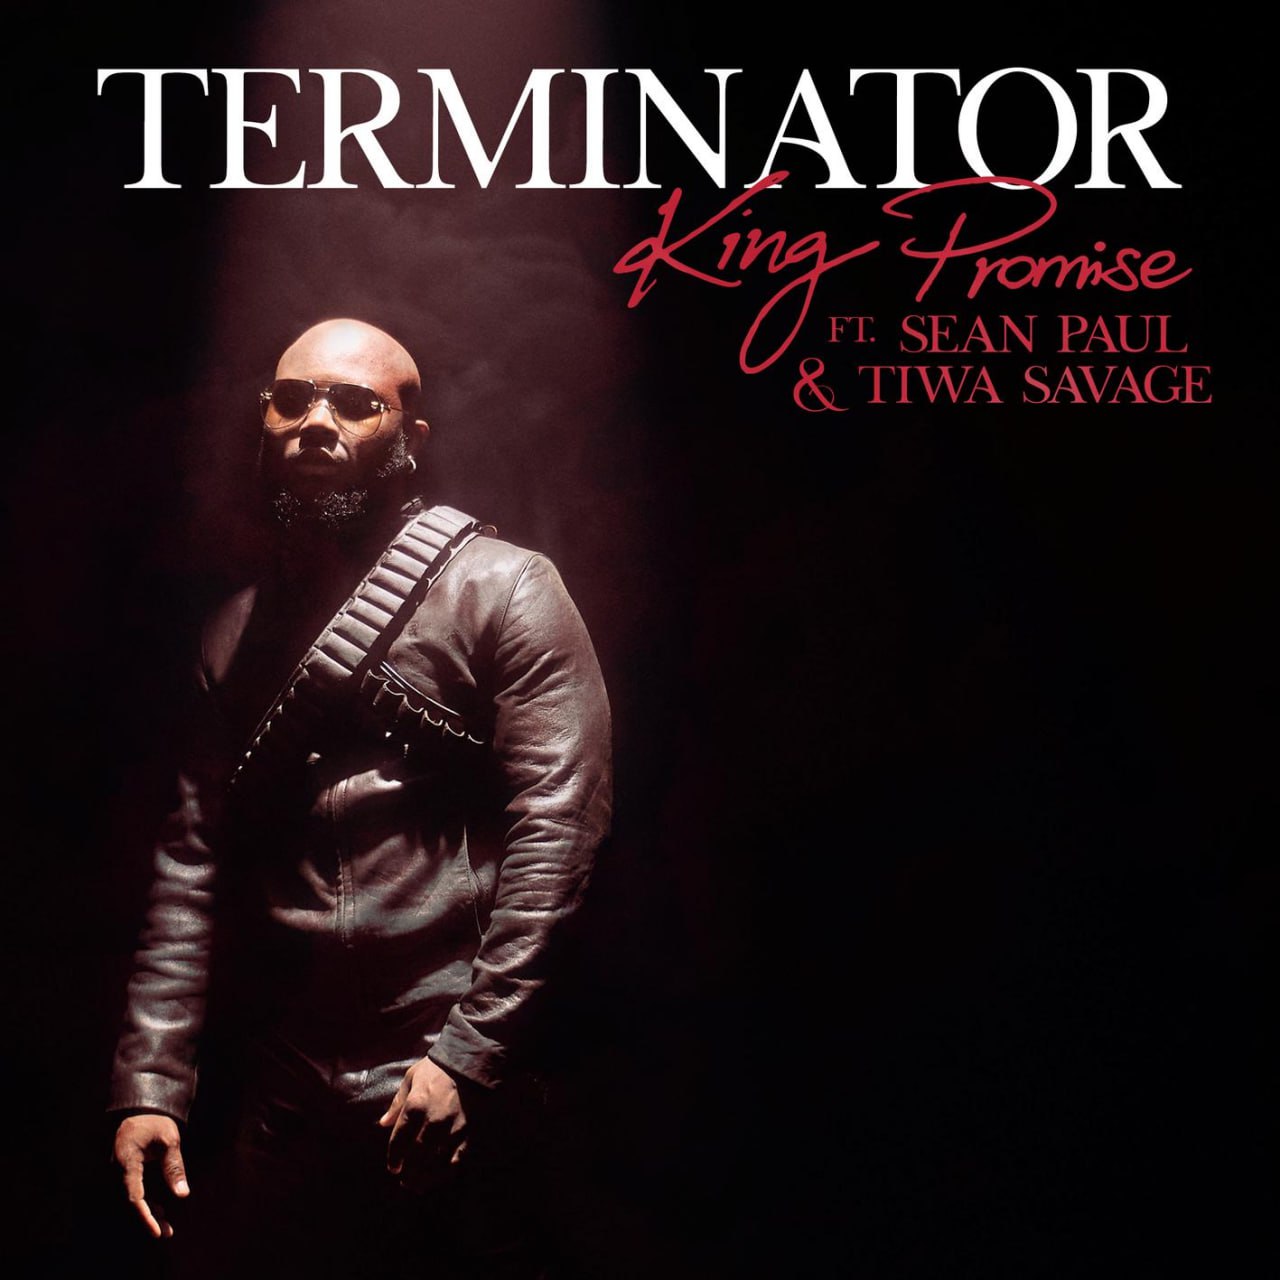 King Promise - Terminator (Remix) ft. Sean Paul & Tiwa Savage